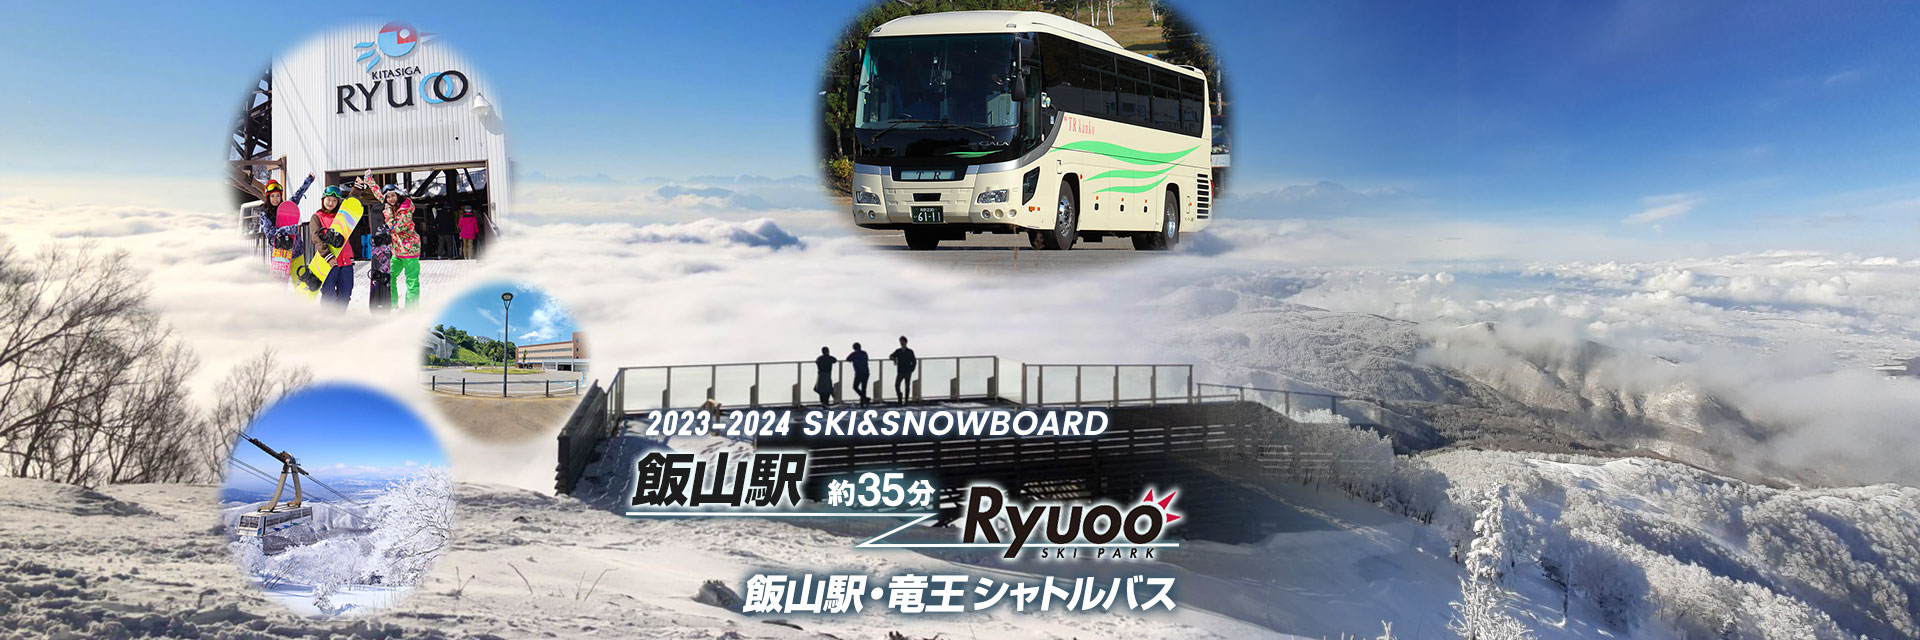 飯山・竜王スキーバス